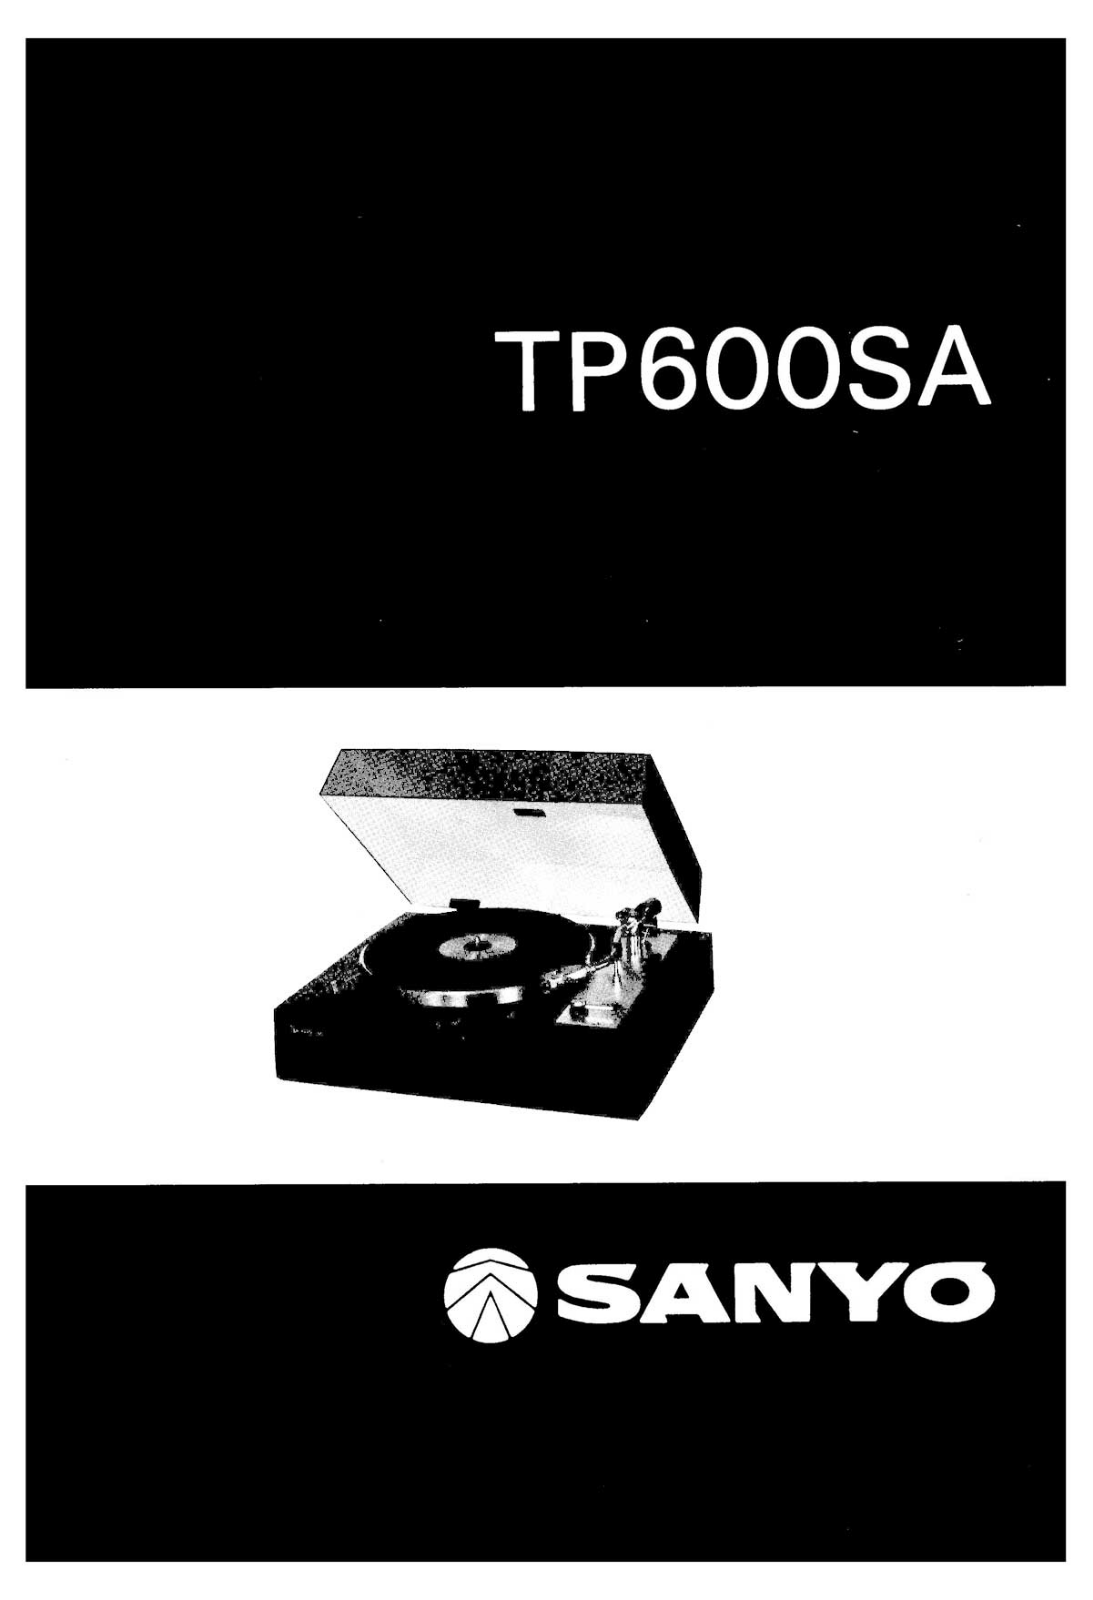 Sanyo TP-600SA Owners Manual